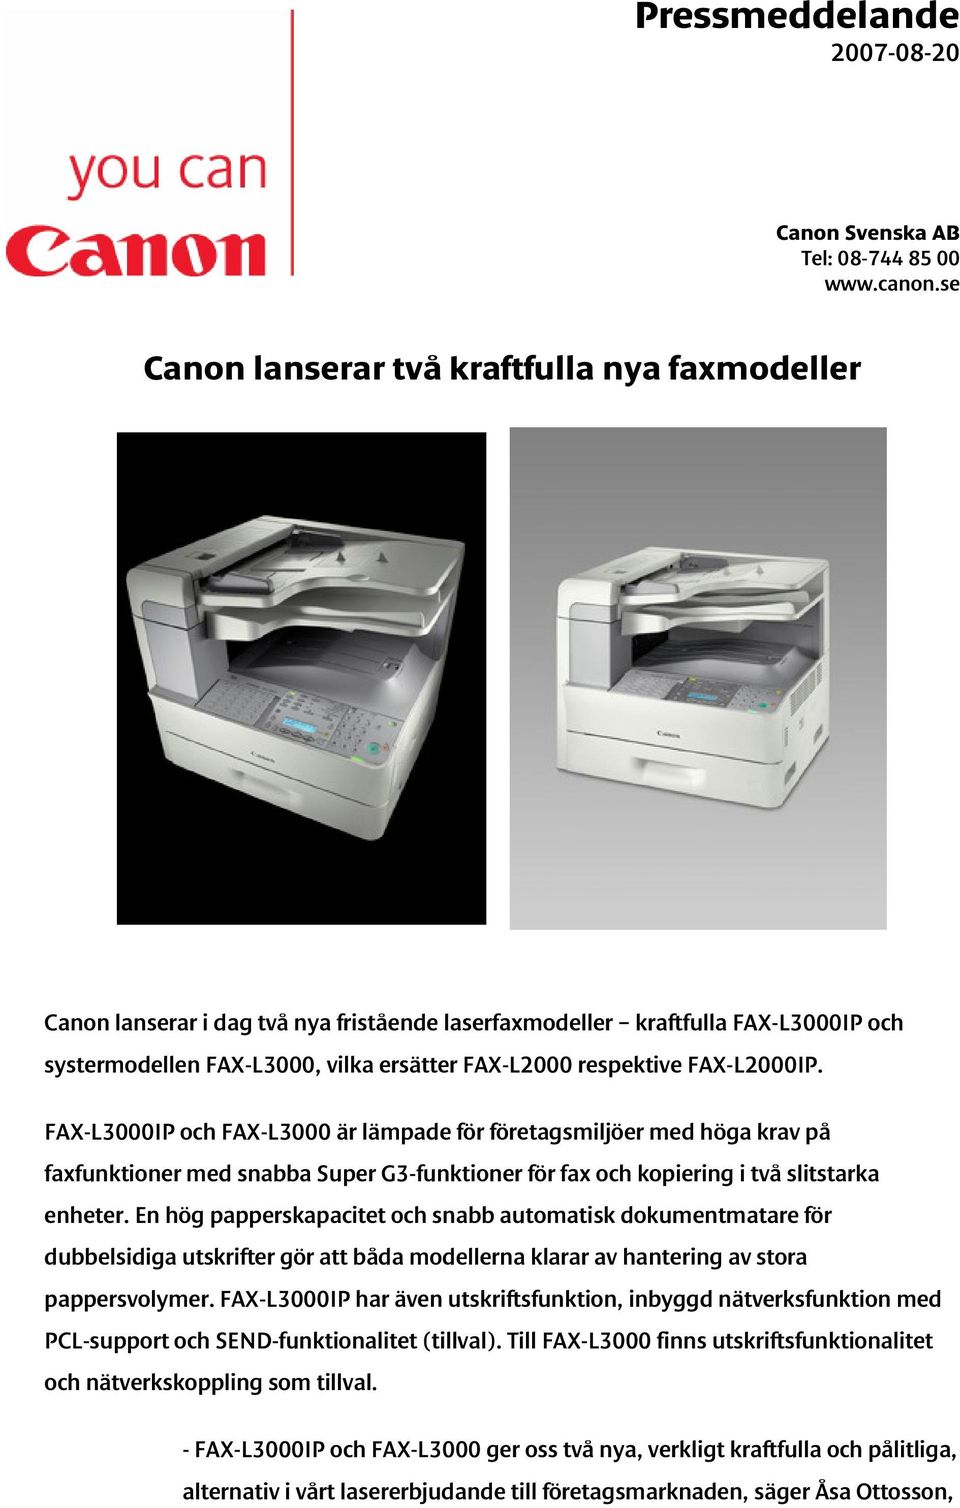 FAX-L2000IP. FAX-L3000IP och FAX-L3000 är lämpade för företagsmiljöer med höga krav på faxfunktioner med snabba Super G3-funktioner för fax och kopiering i två slitstarka enheter.